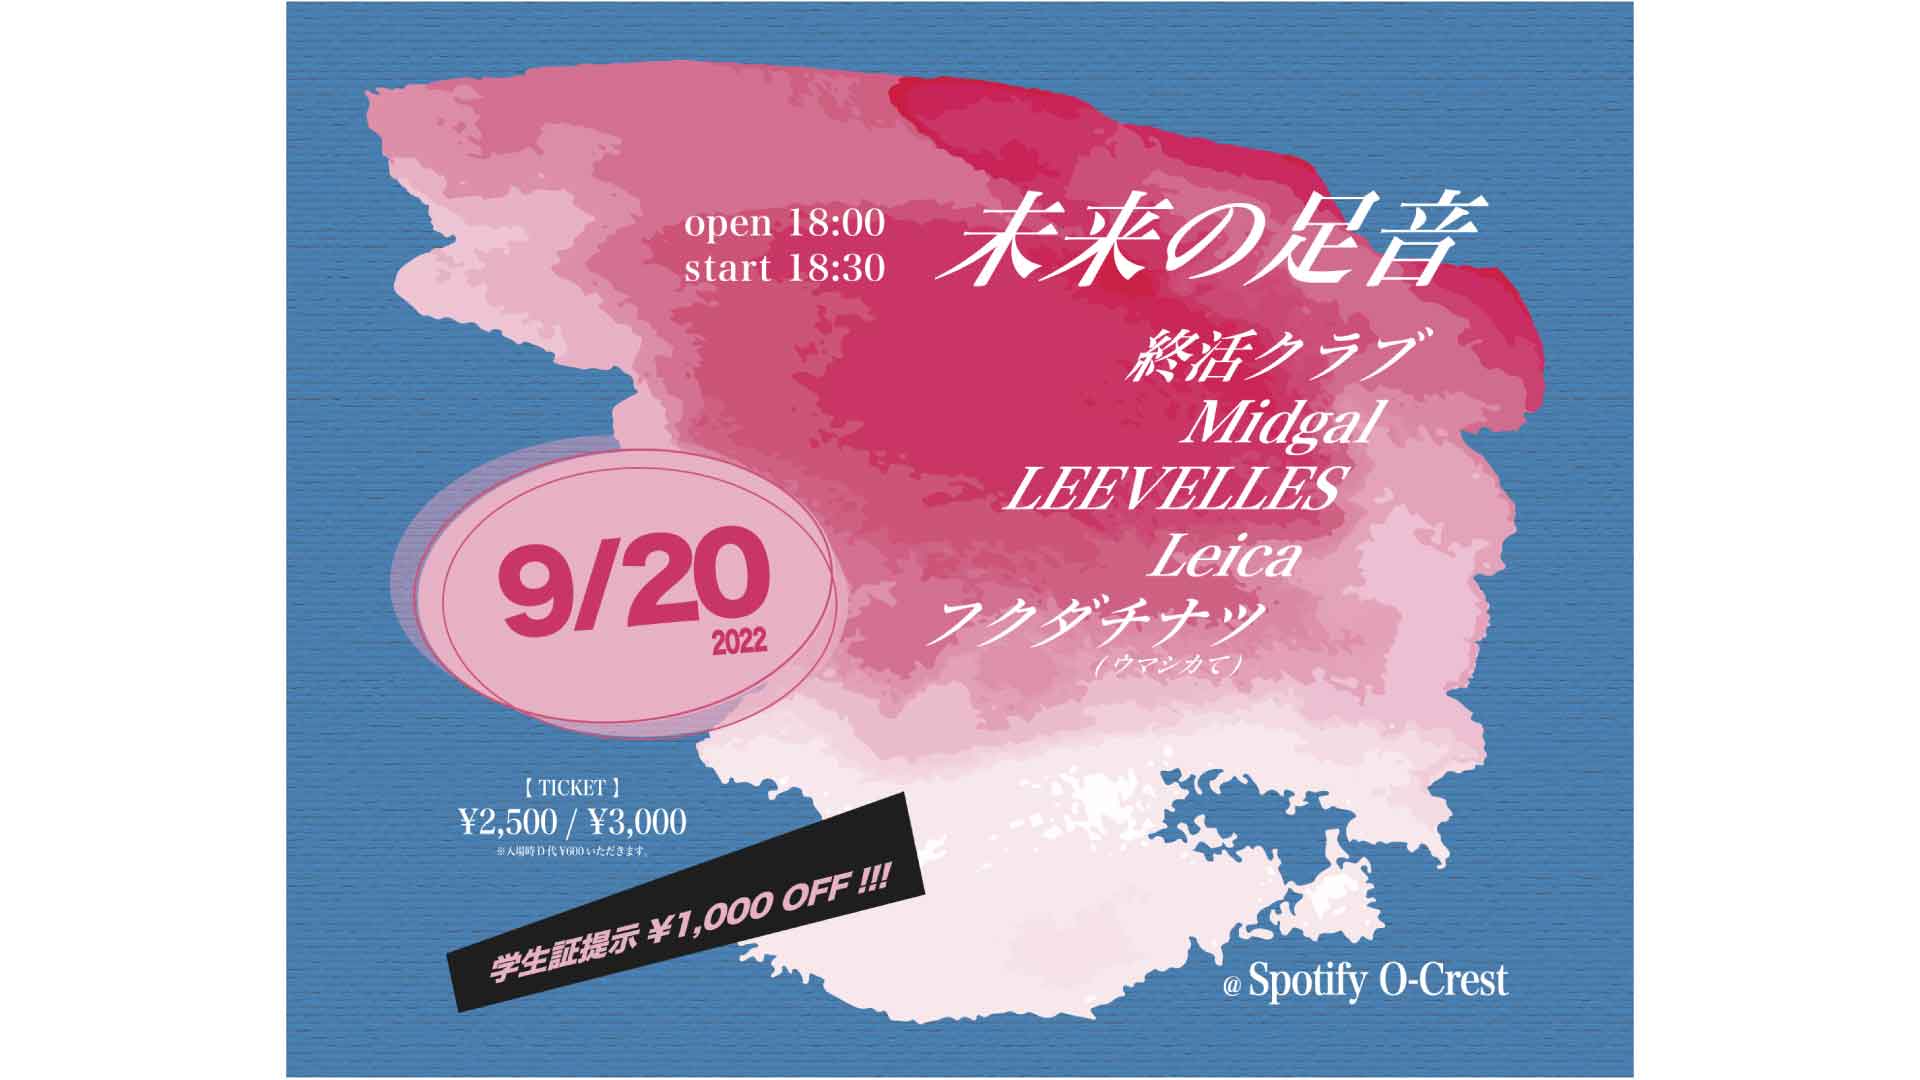 22/9/20 終活クラブ  Midgal  LEEVELLES  Leica フクダチナツ(ウマシカて)